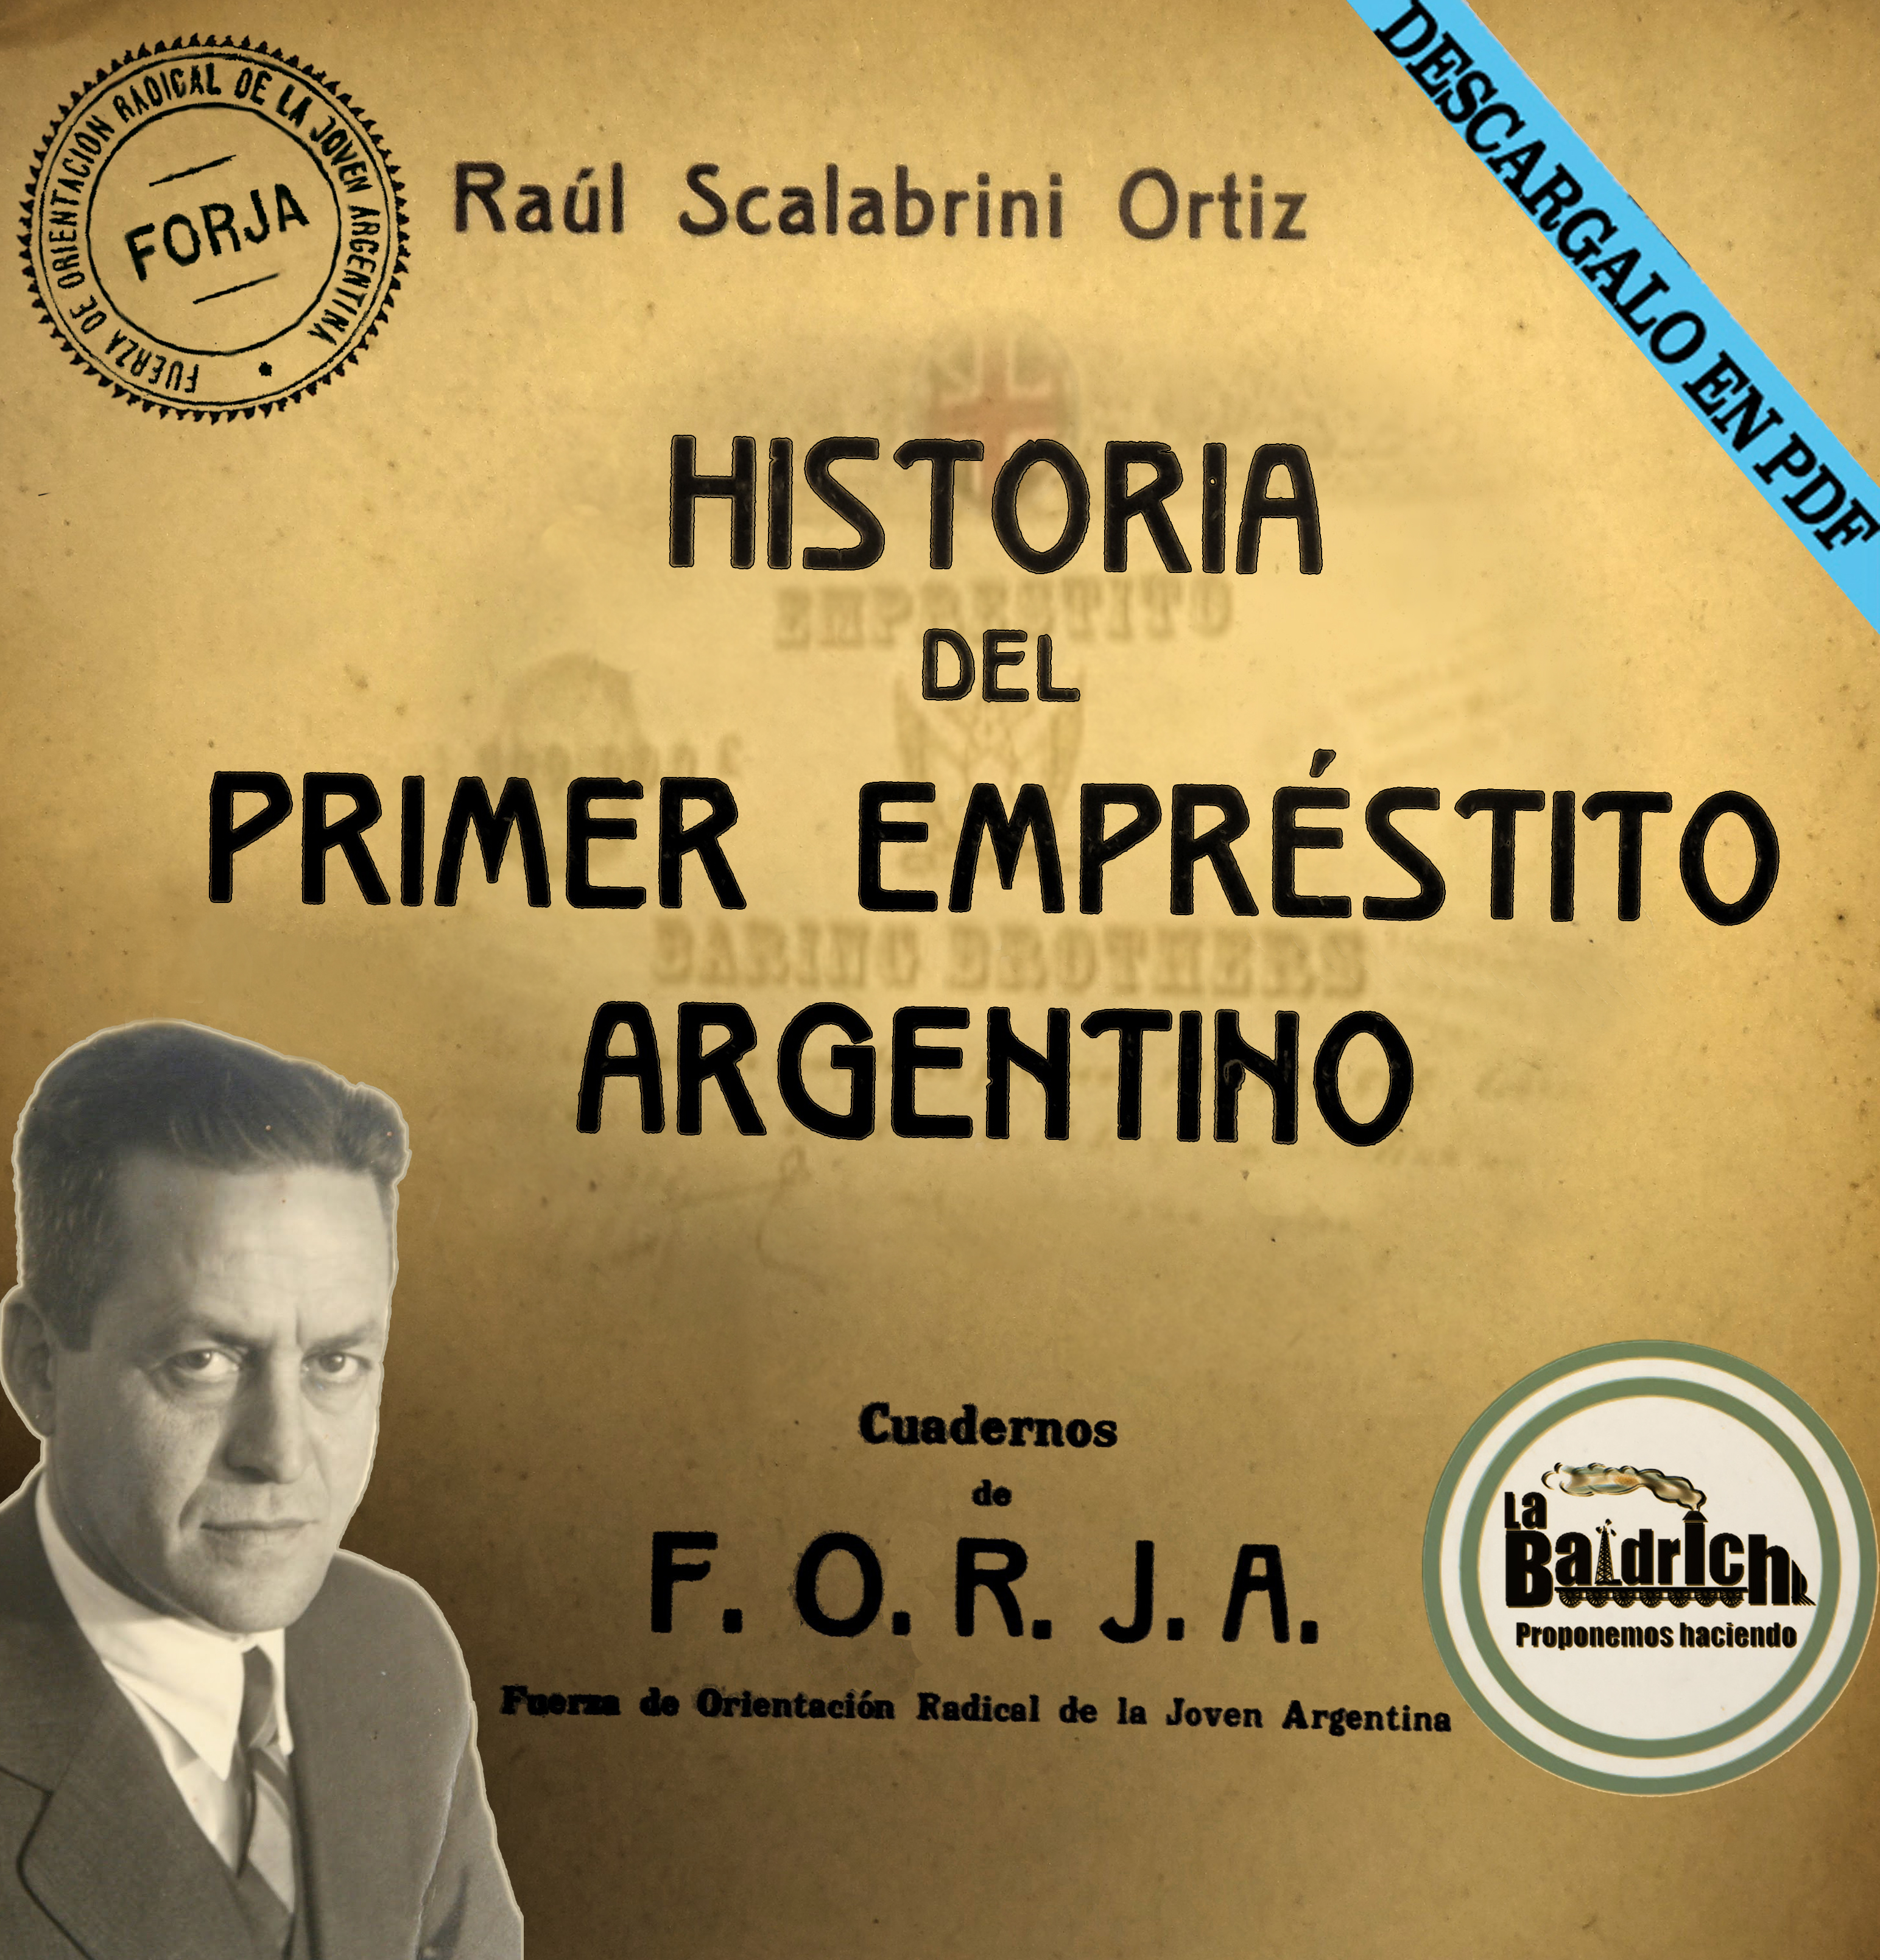 Cuaderno de FORJA N°8 La historia el primer empréstito argentino Raúl Scalabrini Ortiz  Julio 1939